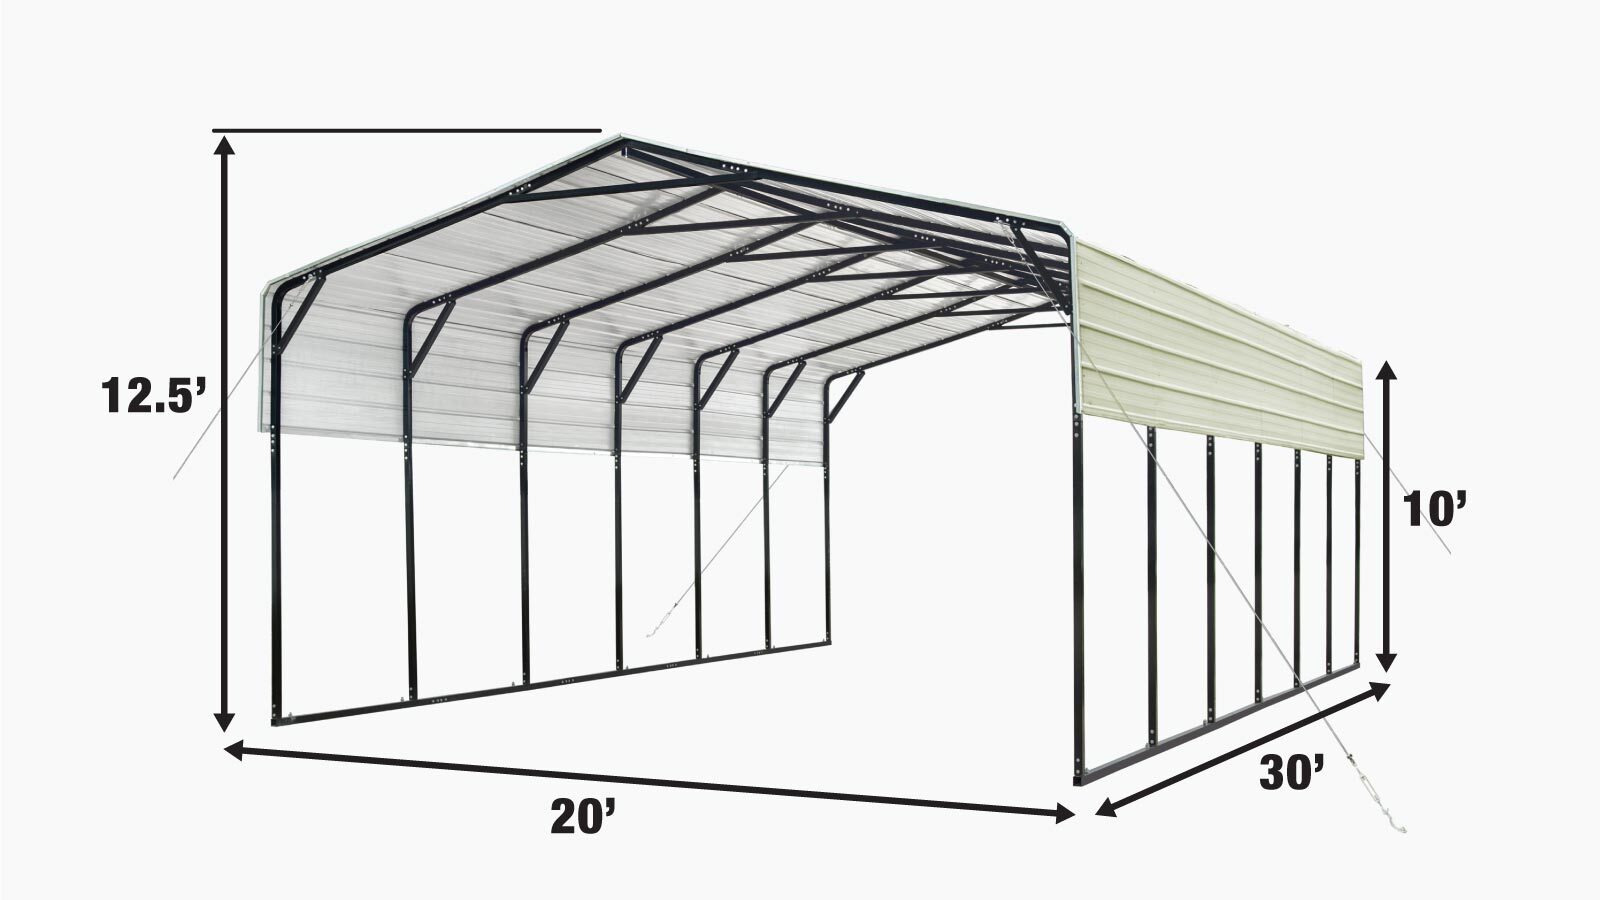 TMG Industrial 20' x 30' Carport tout en acier avec parois latérales ouvertes de 10', toit galvanisé, revêtement en poudre, revêtement de peinture polyester, câbles de stabilisation, TMG-CP2030-specifications-image